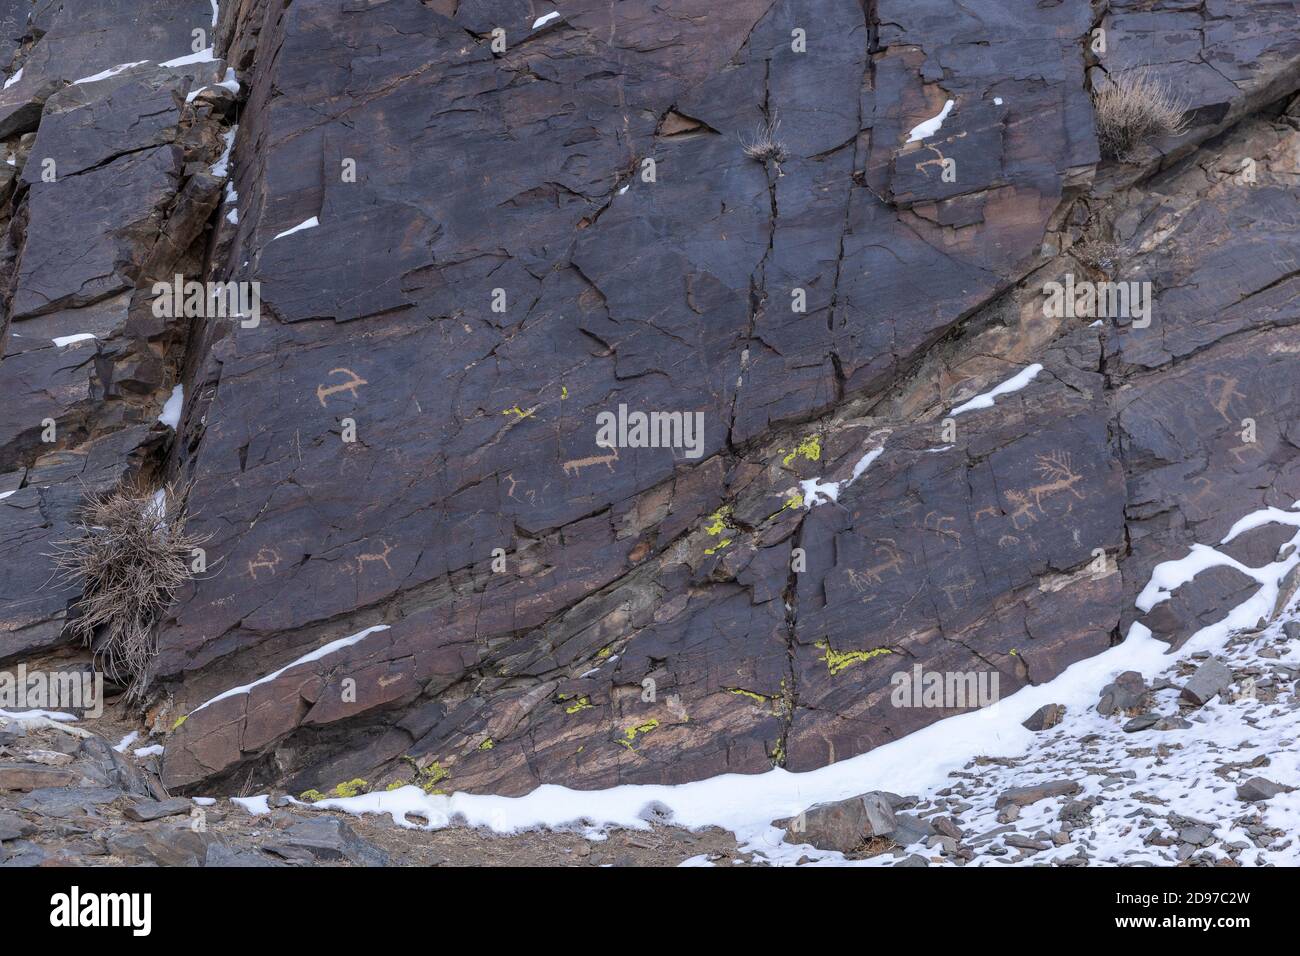 Vallée de sculptures de roche, rochers avec sculptures de roche, datant de - 8000 et - 3000 ans, montagnes Altai, Mongolie-Ouest, Mongolie Banque D'Images